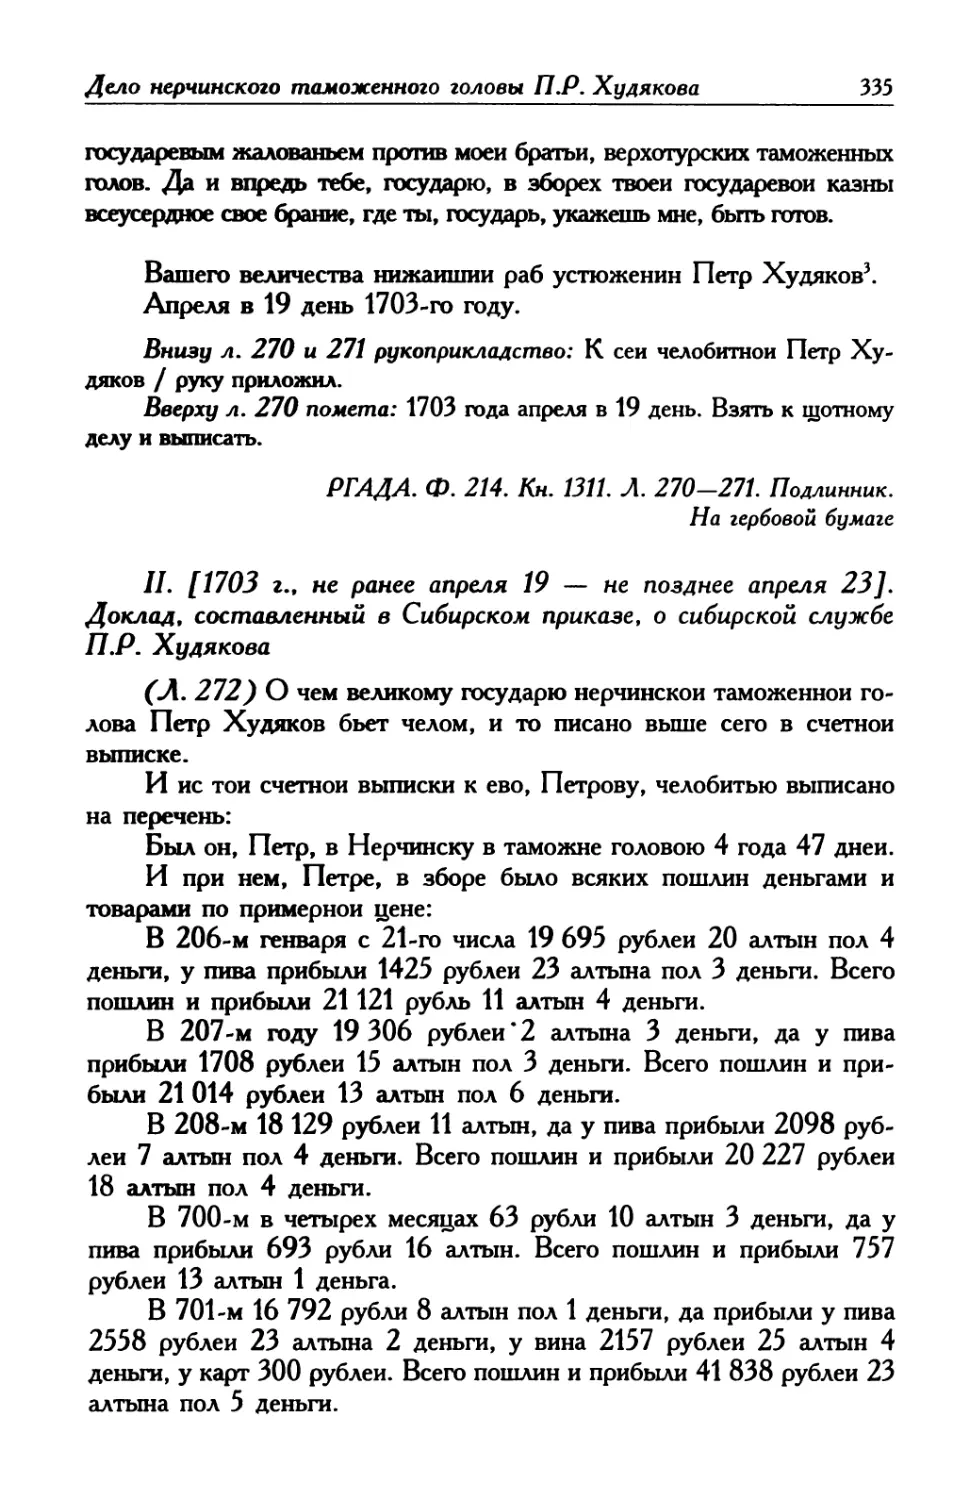 II. [1703 г., не ранее апреля 19 – не позднее апреля 23]. Доклад, составленный в Сибирском приказе, о сибирской службе П. Р. Худякова